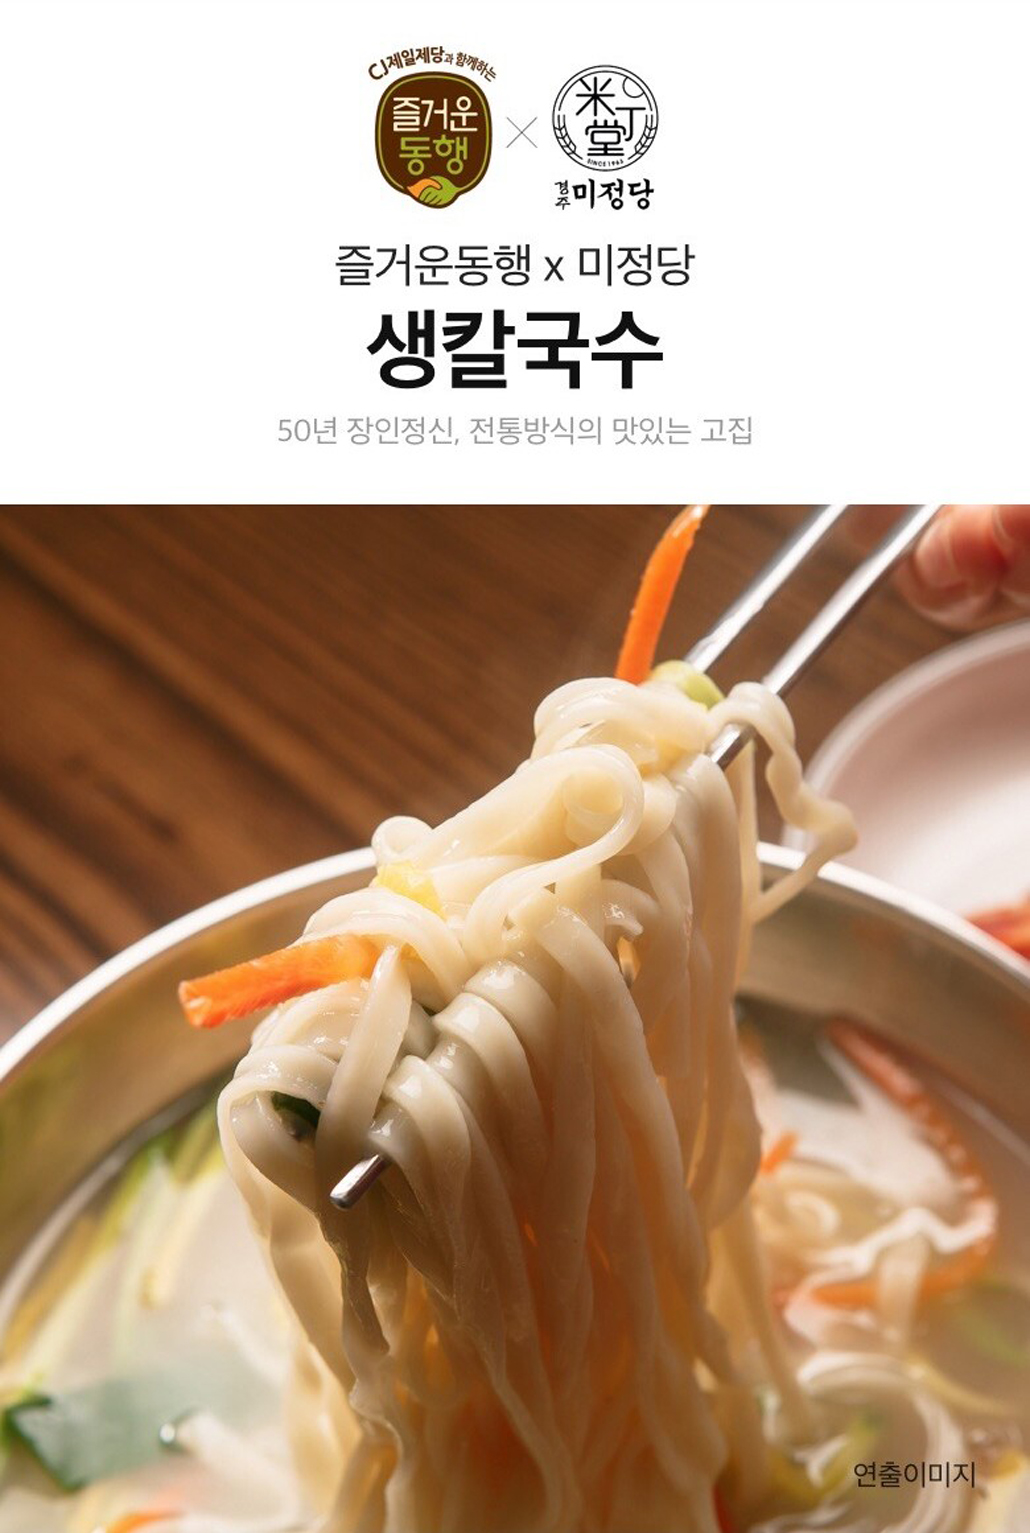 韓國食品-[CJ] 慶州米丁堂 手打刀削麵 400g